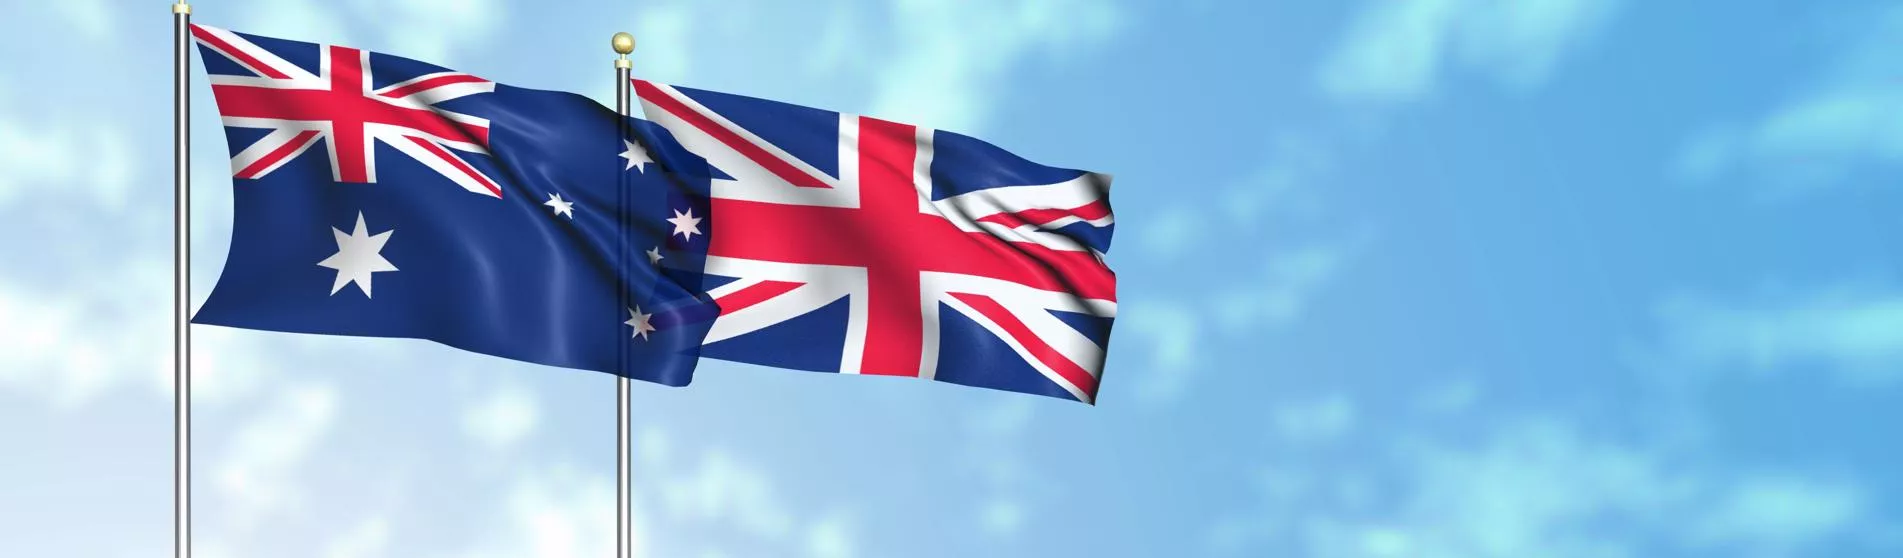 Aus:NZ flag